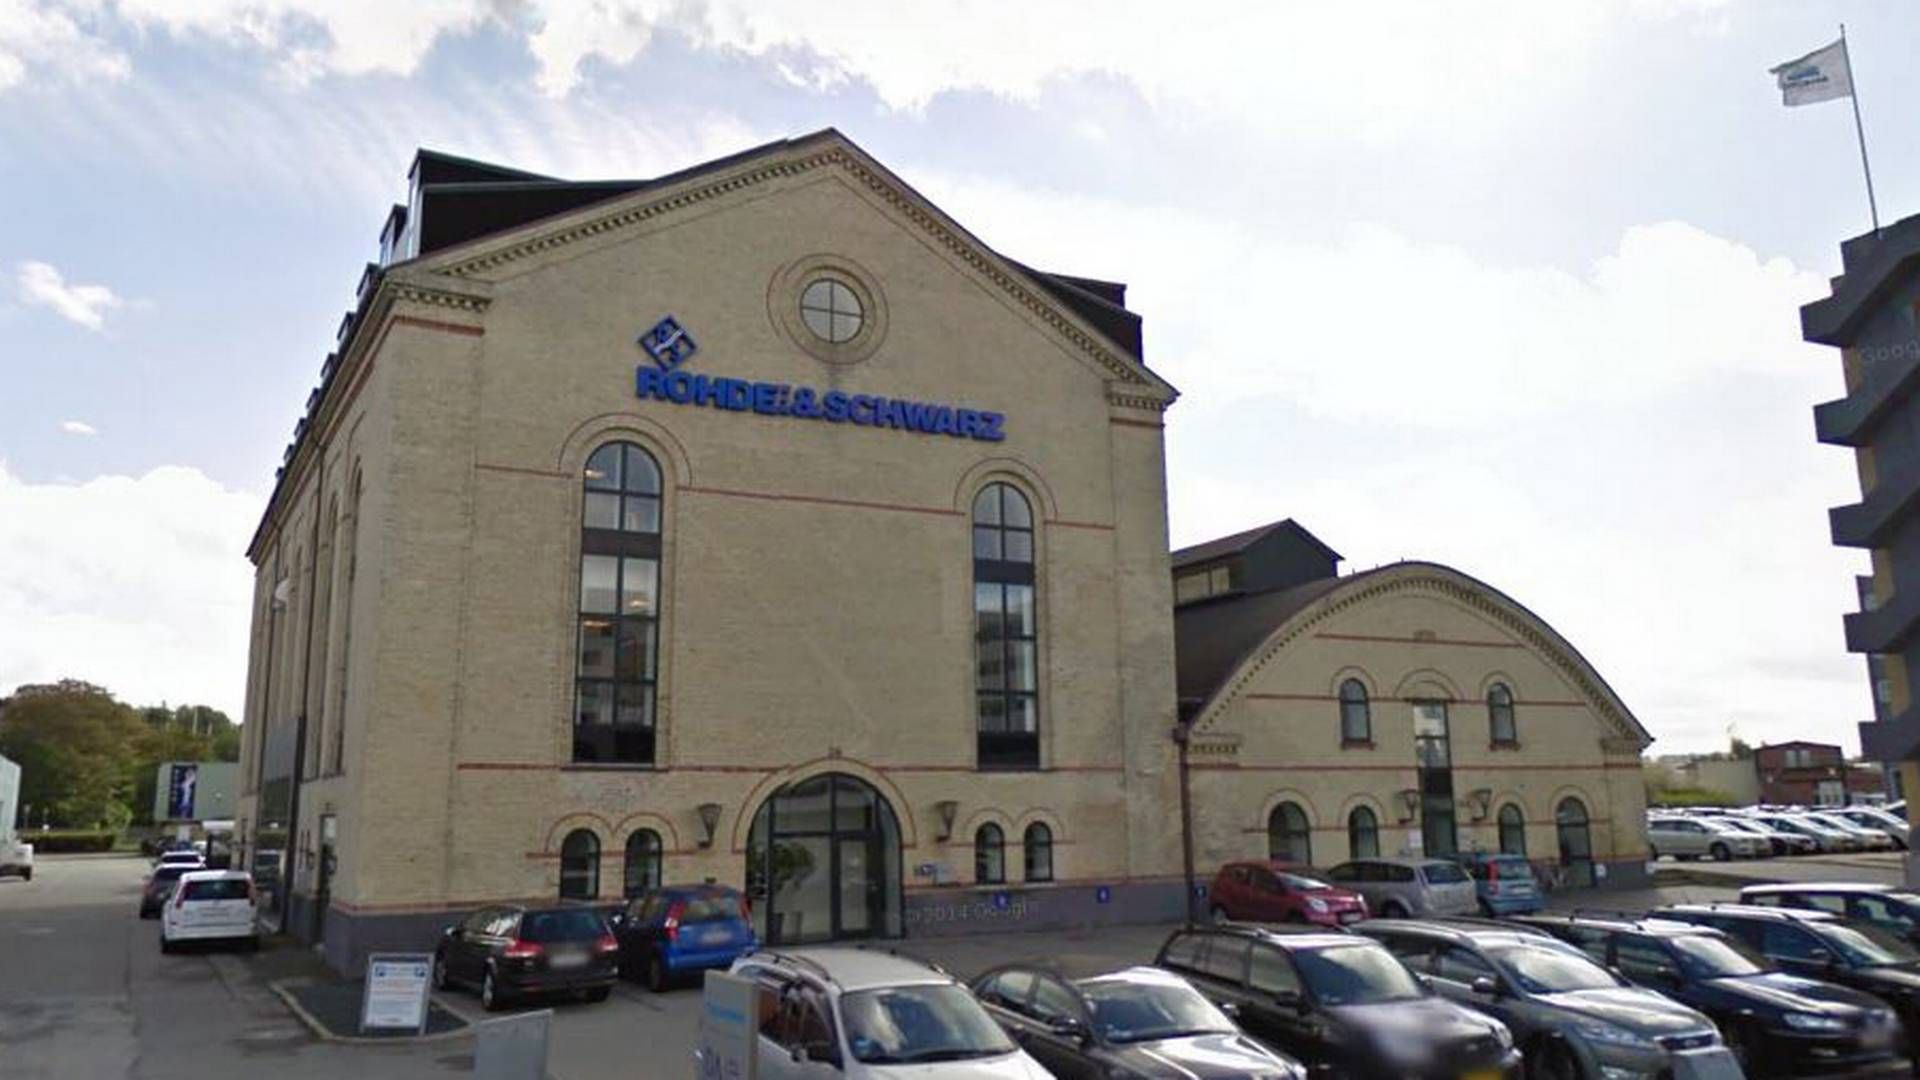 Rohde & Scwharz' udviklingsafdeling holder til i Aalborg. | Foto: Google Maps